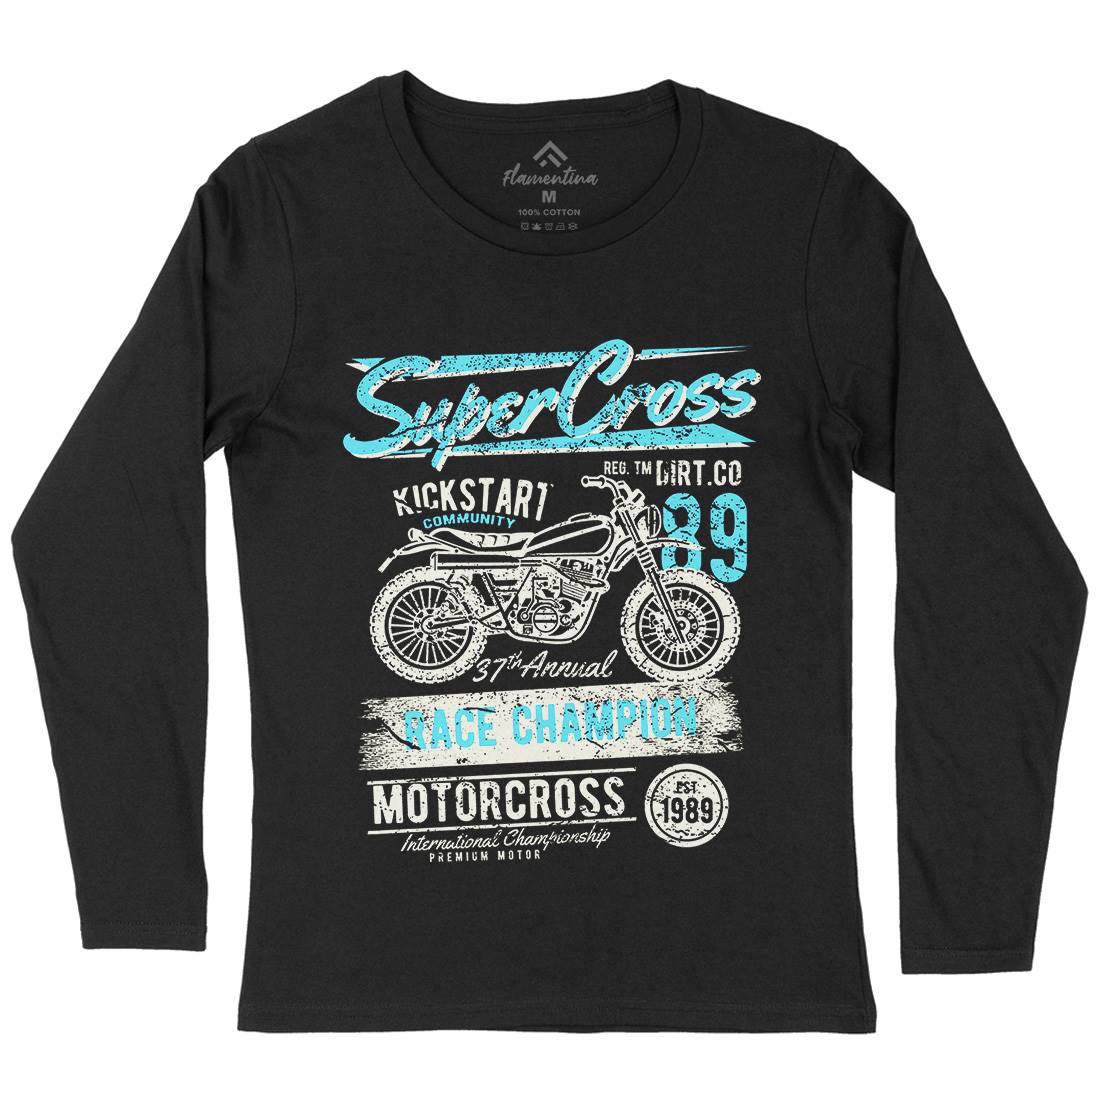 Super Cross Womens Long Sleeve T-Shirt Motorcycles A165